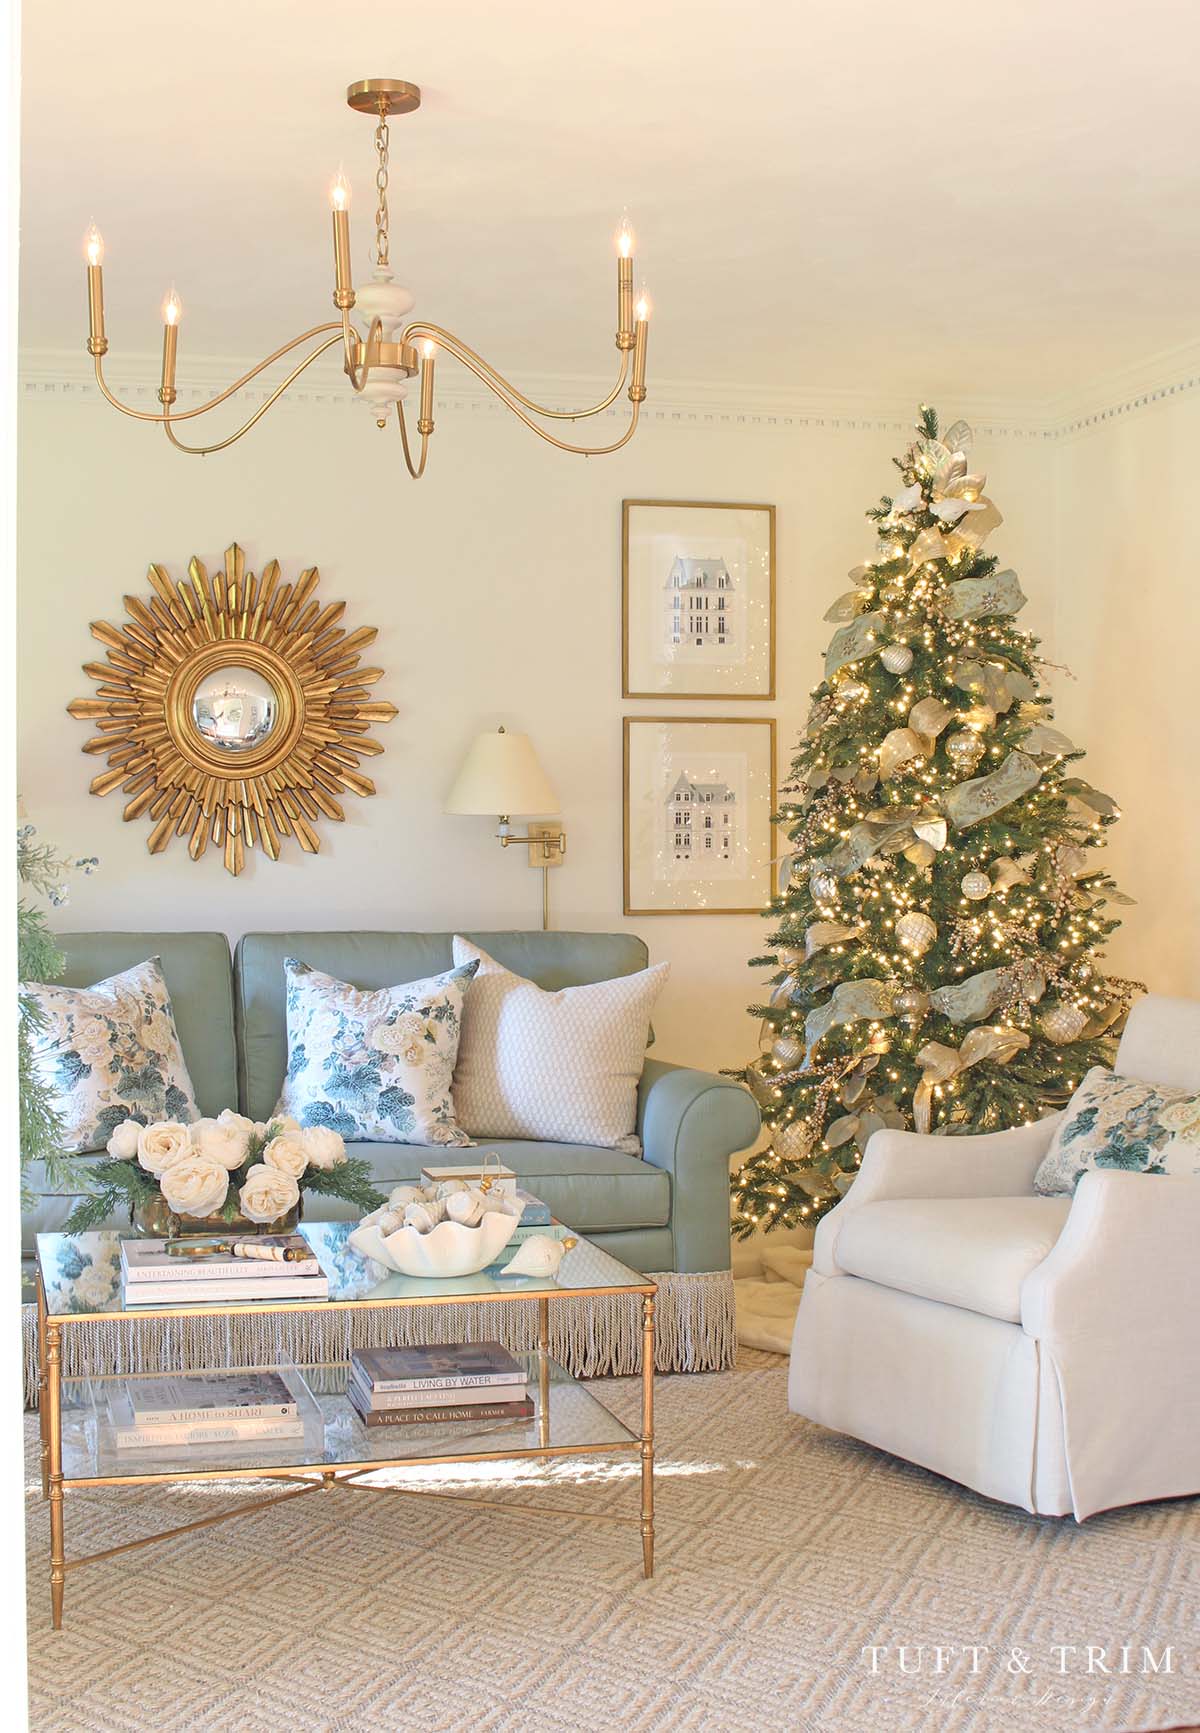 A Grandmillennial Christmas with Tuft & Trim Interior Design